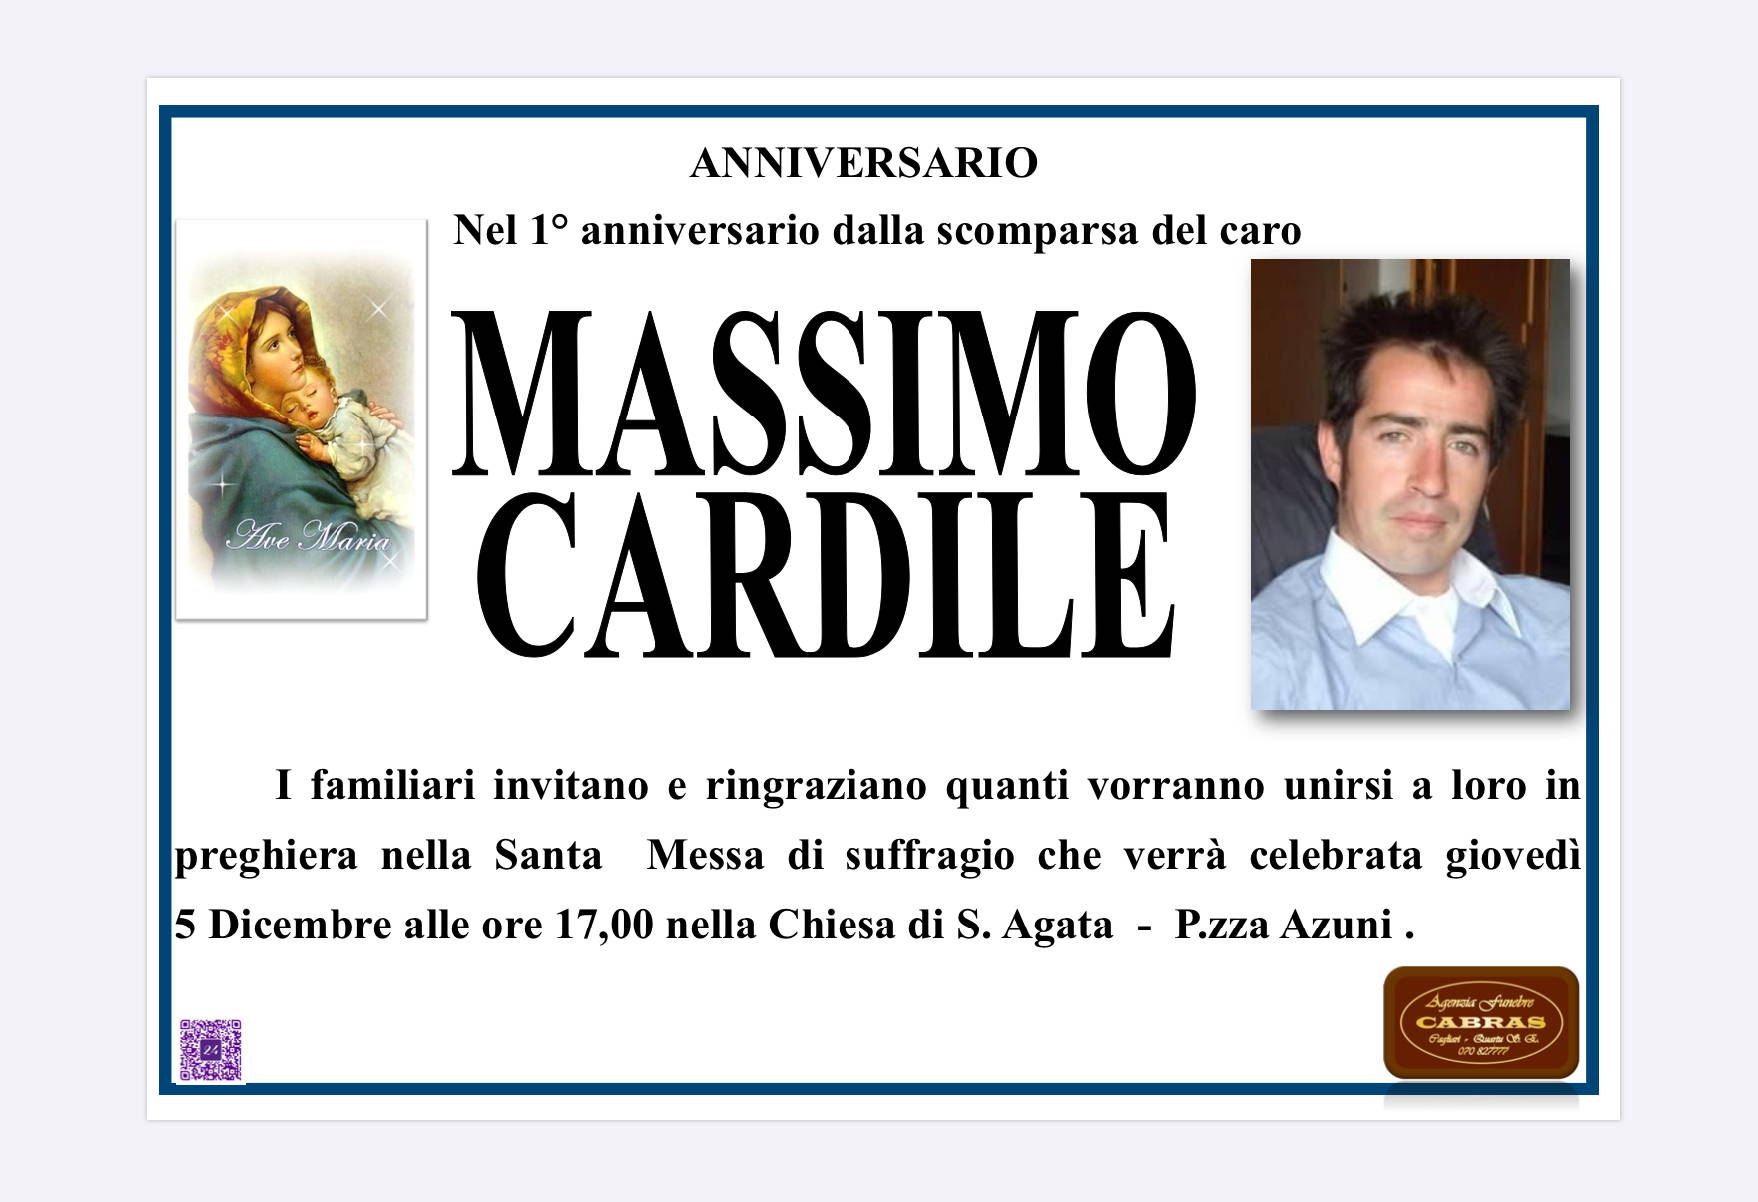 Massimo Cardile